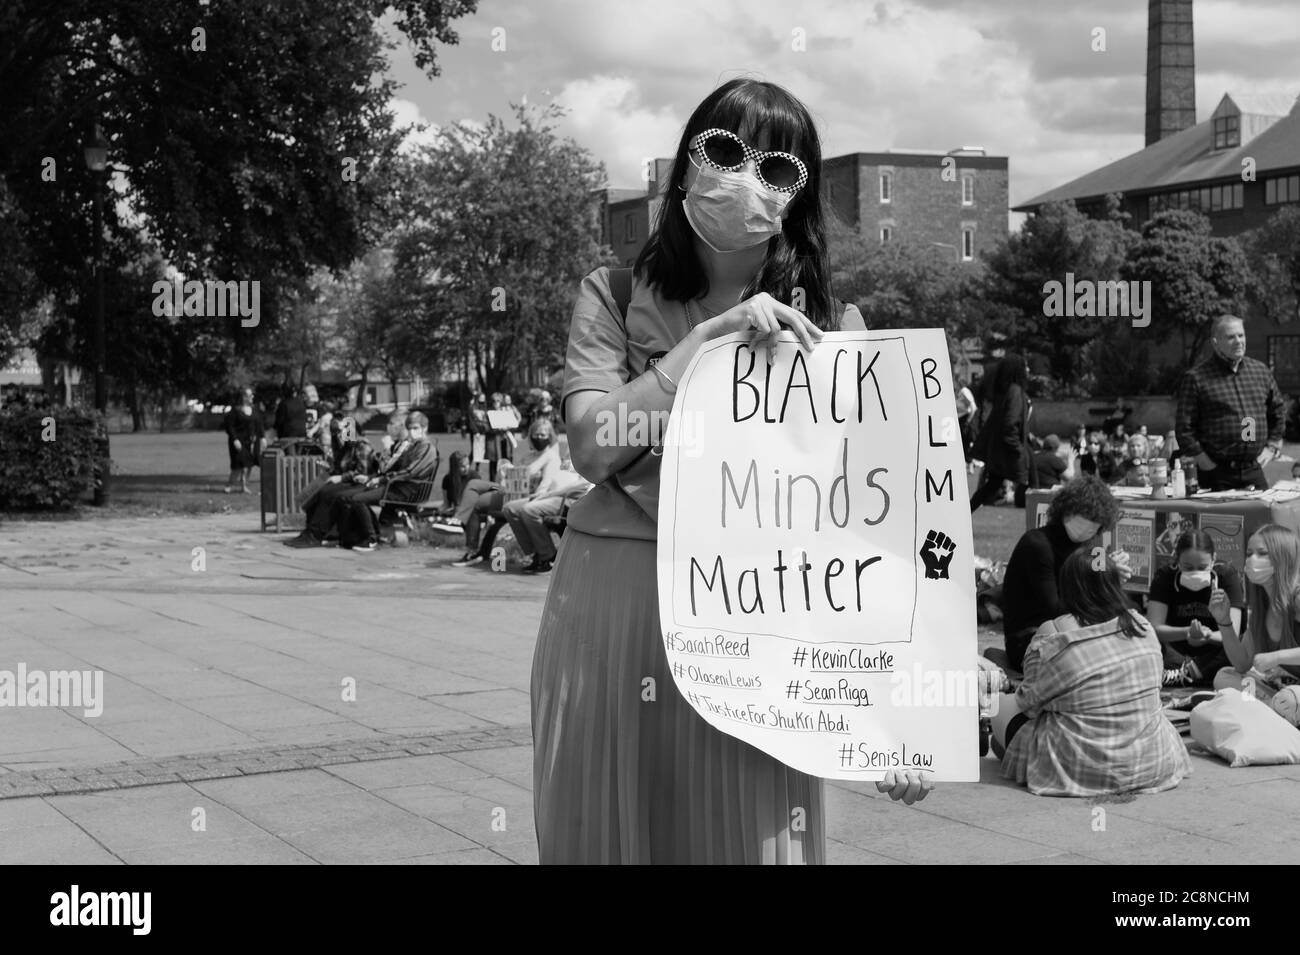 HULL, Großbritannien - 11. JULI 2020: Protestkundgebung für Black Lives Matter Treffen mit Corona Virus Maske am 11. Juli 2020 in Hull, Humberside, Großbritannien. Stockfoto